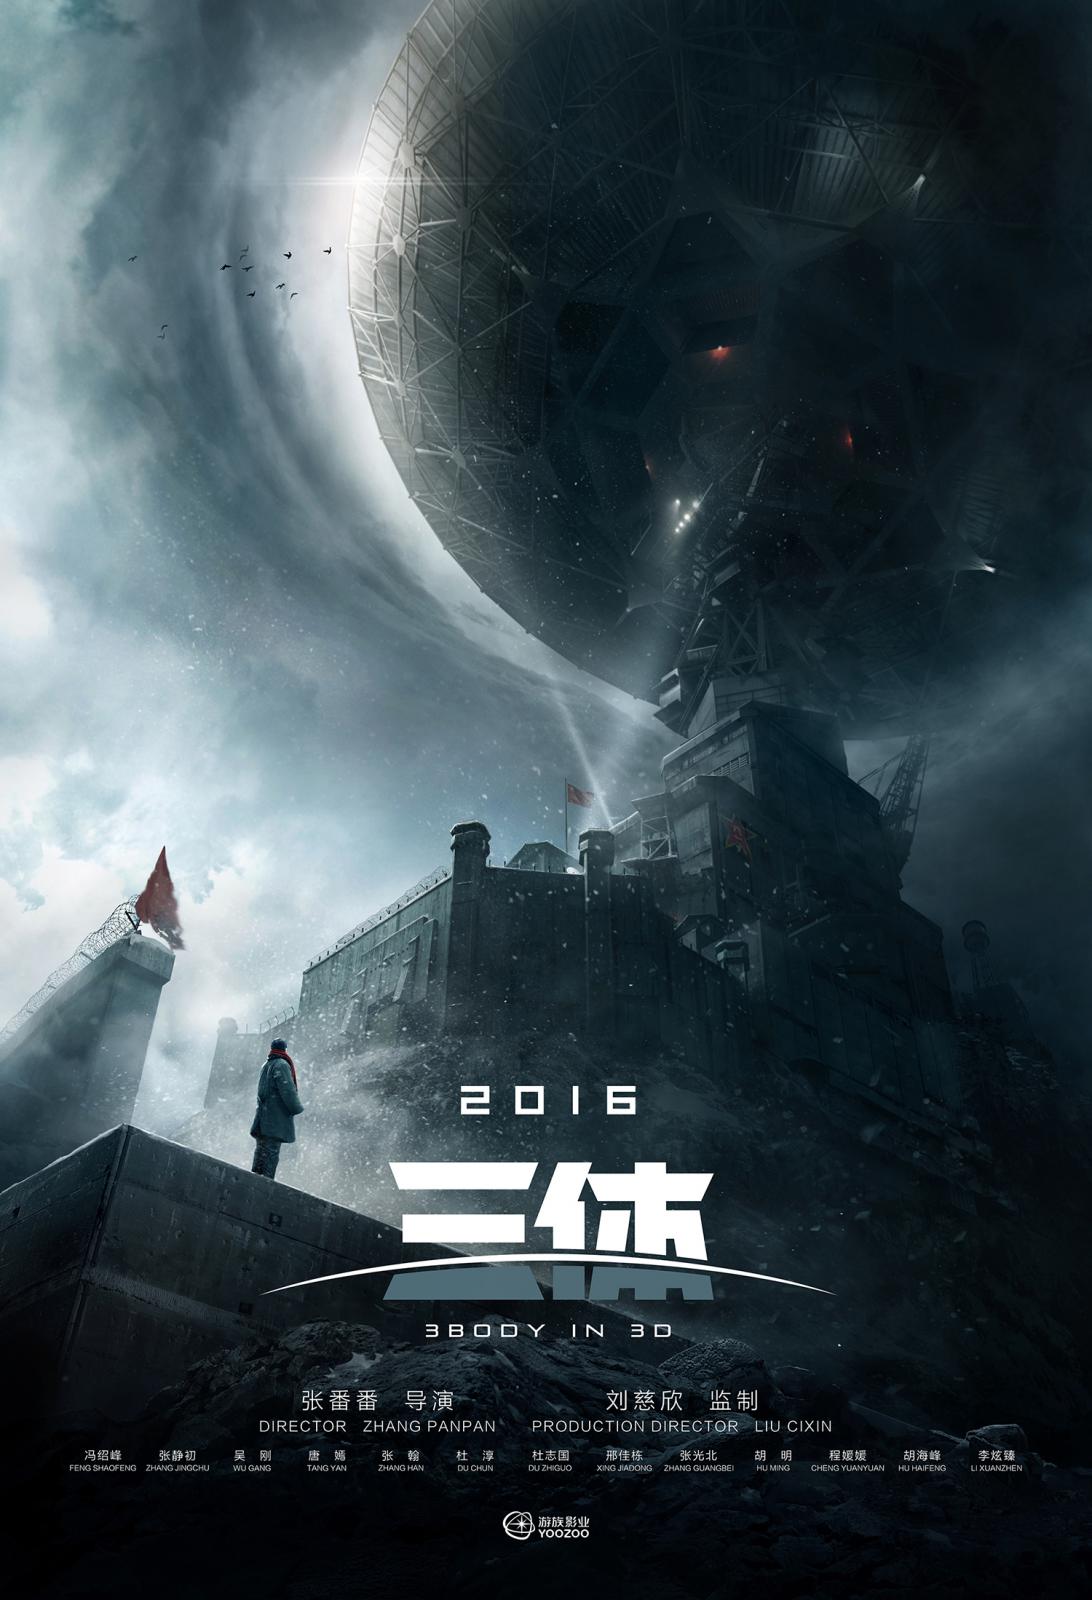 Cixin Liu: Die drei Sonnen - Science Fiction gemischt mit